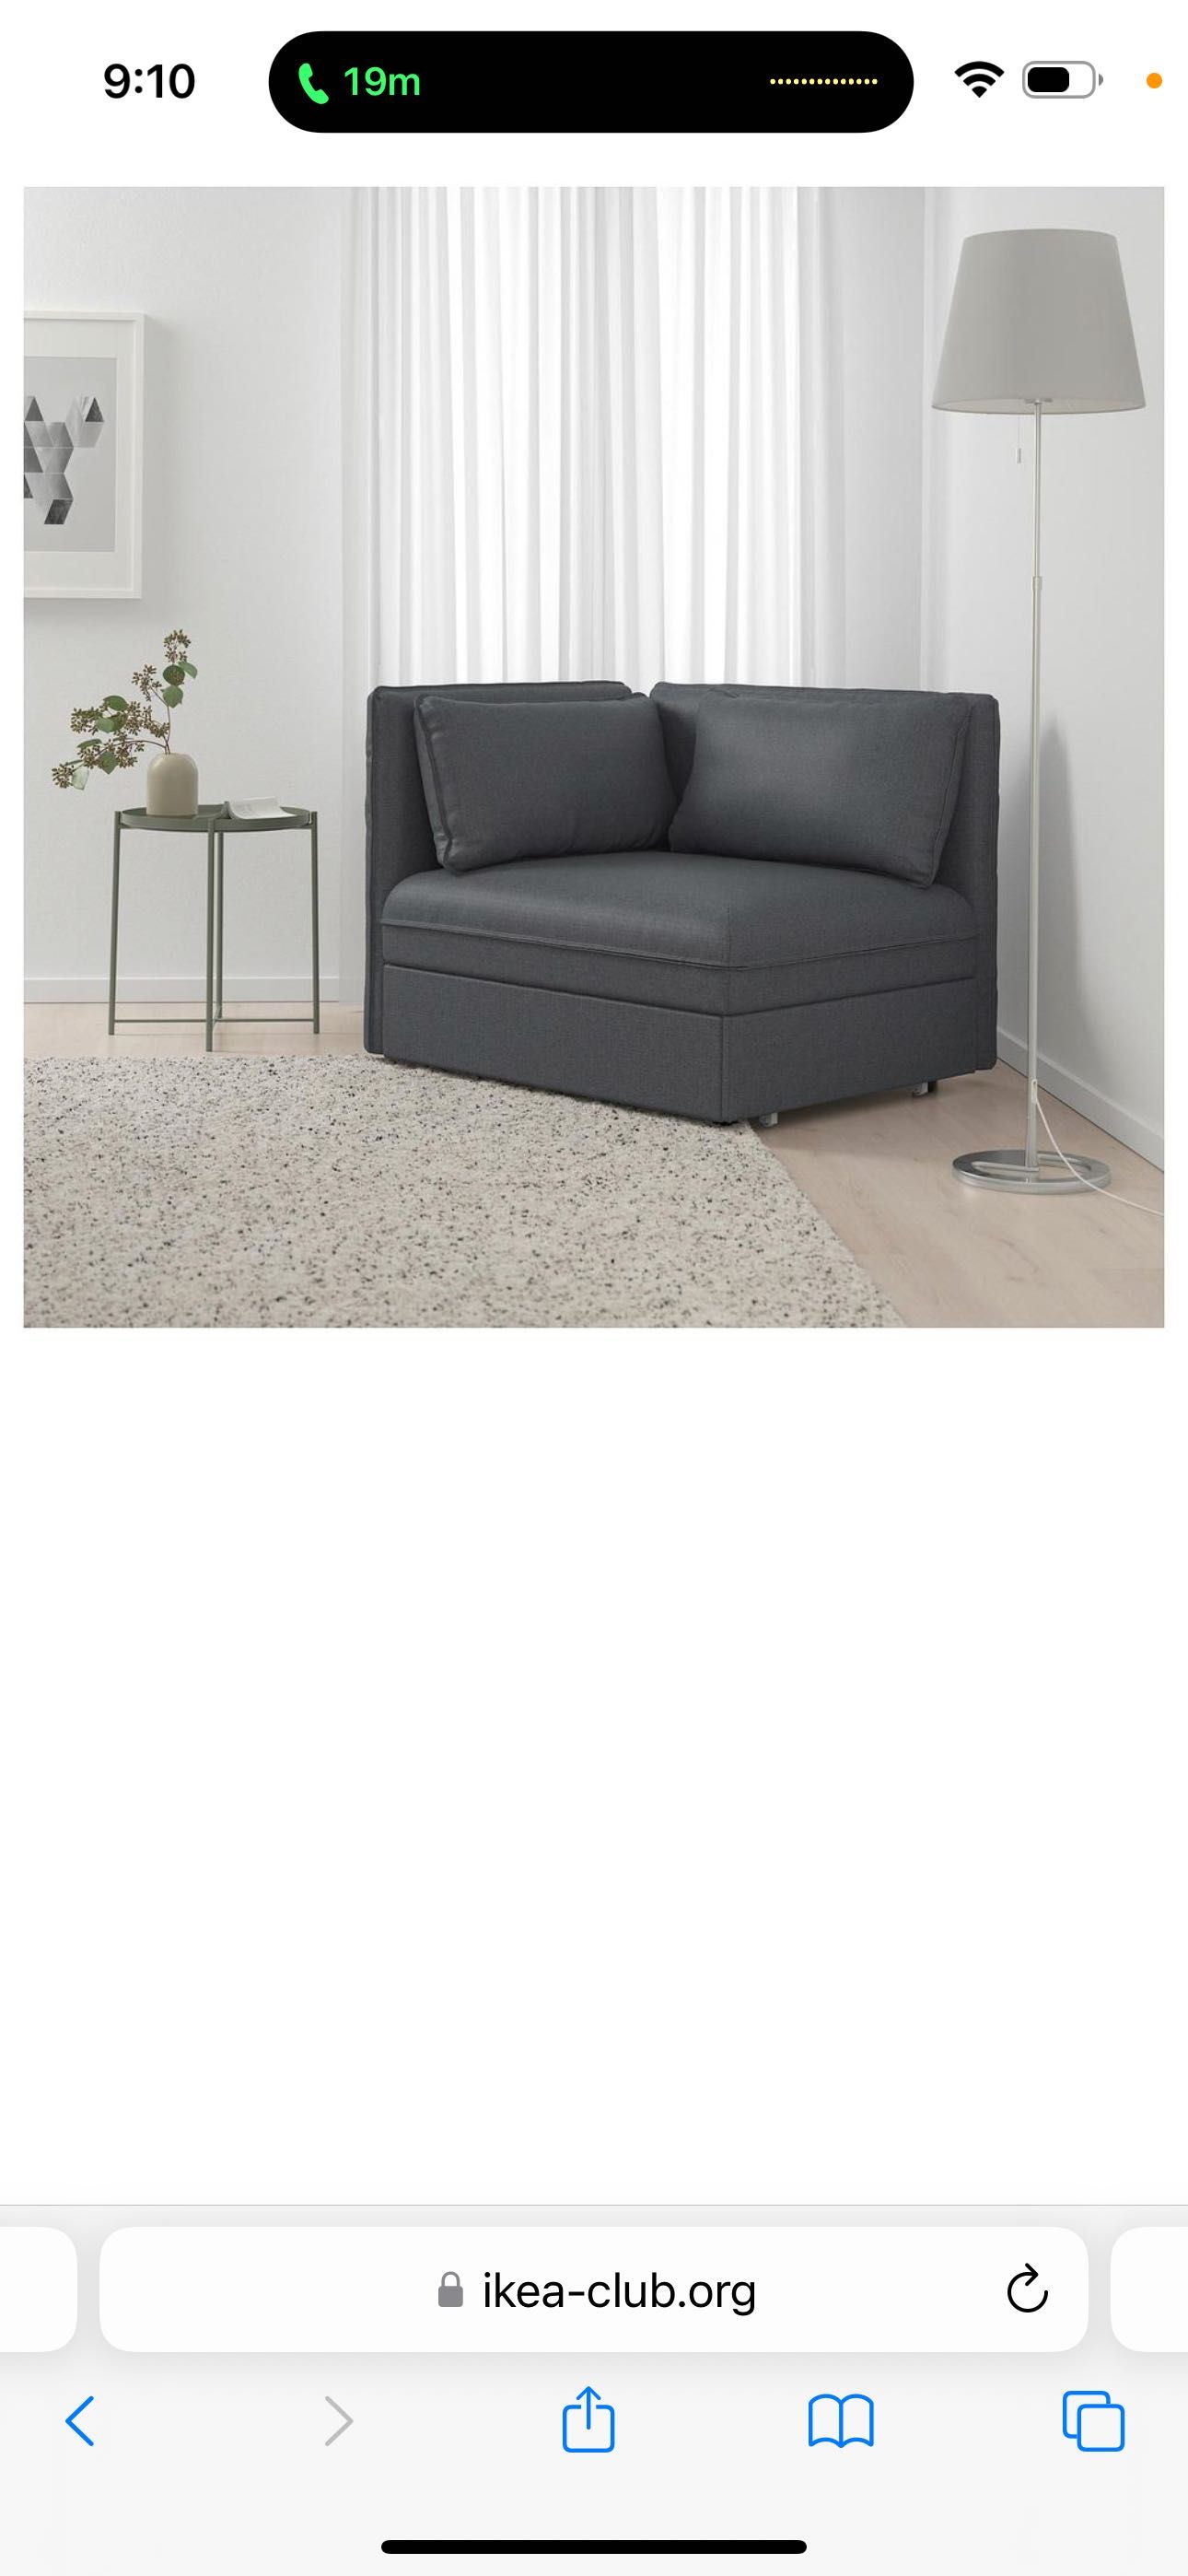 Ikea fotel, sekcja lub pufa